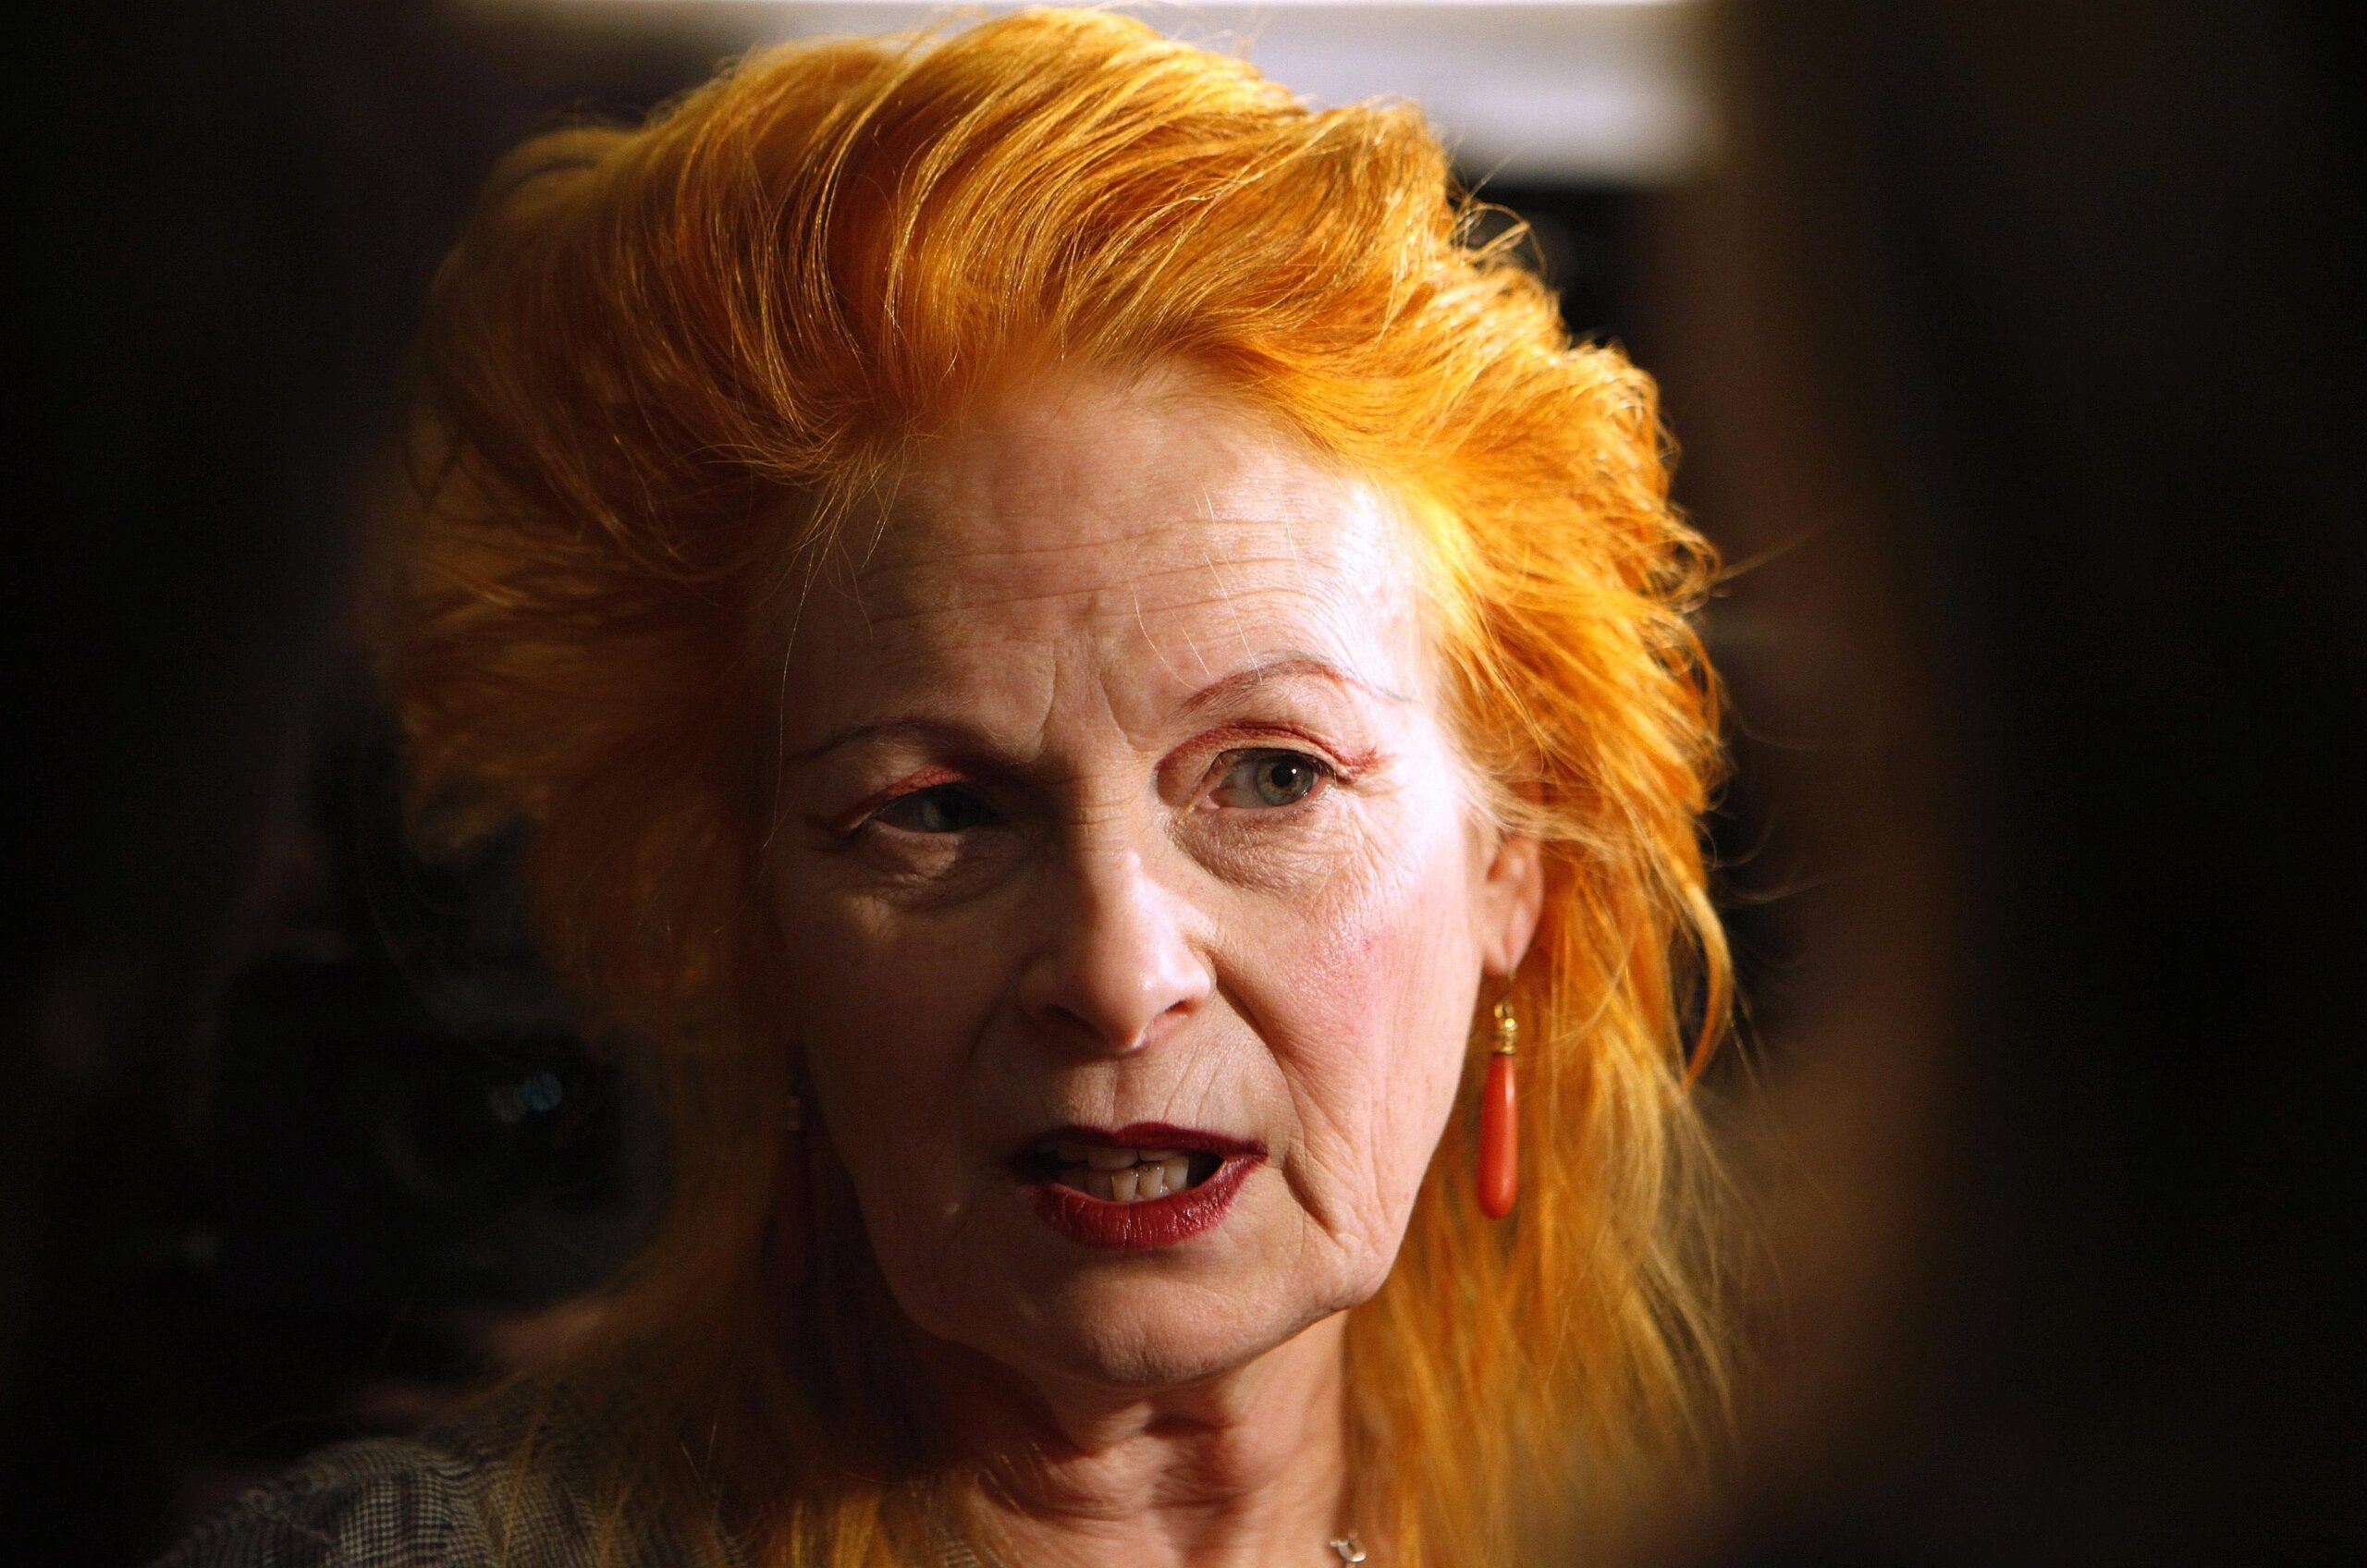 Zerzauste Haare, ein Gesicht, das nach Punk-Rock aussieht - am 8. April ist Modeschöpferin Vivienne Westwood 70 Jahre alt geworden. Die Britin...